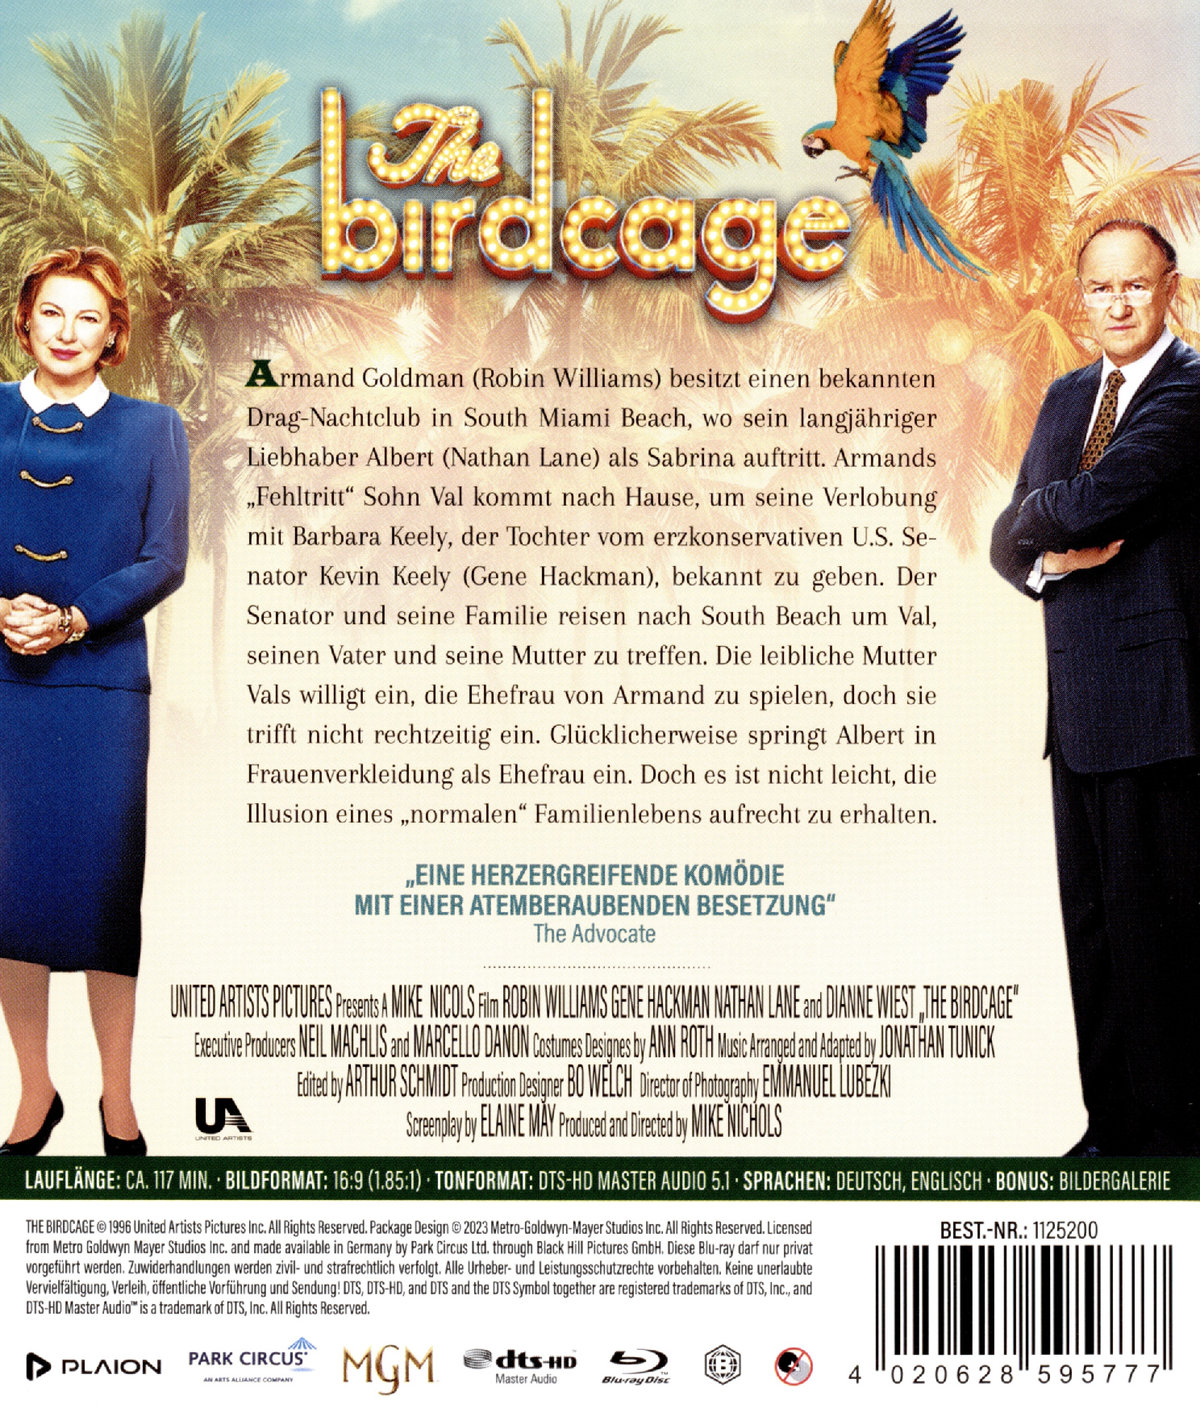 Birdcage, The - Ein Paradies für schrille Vögel (blu-ray)